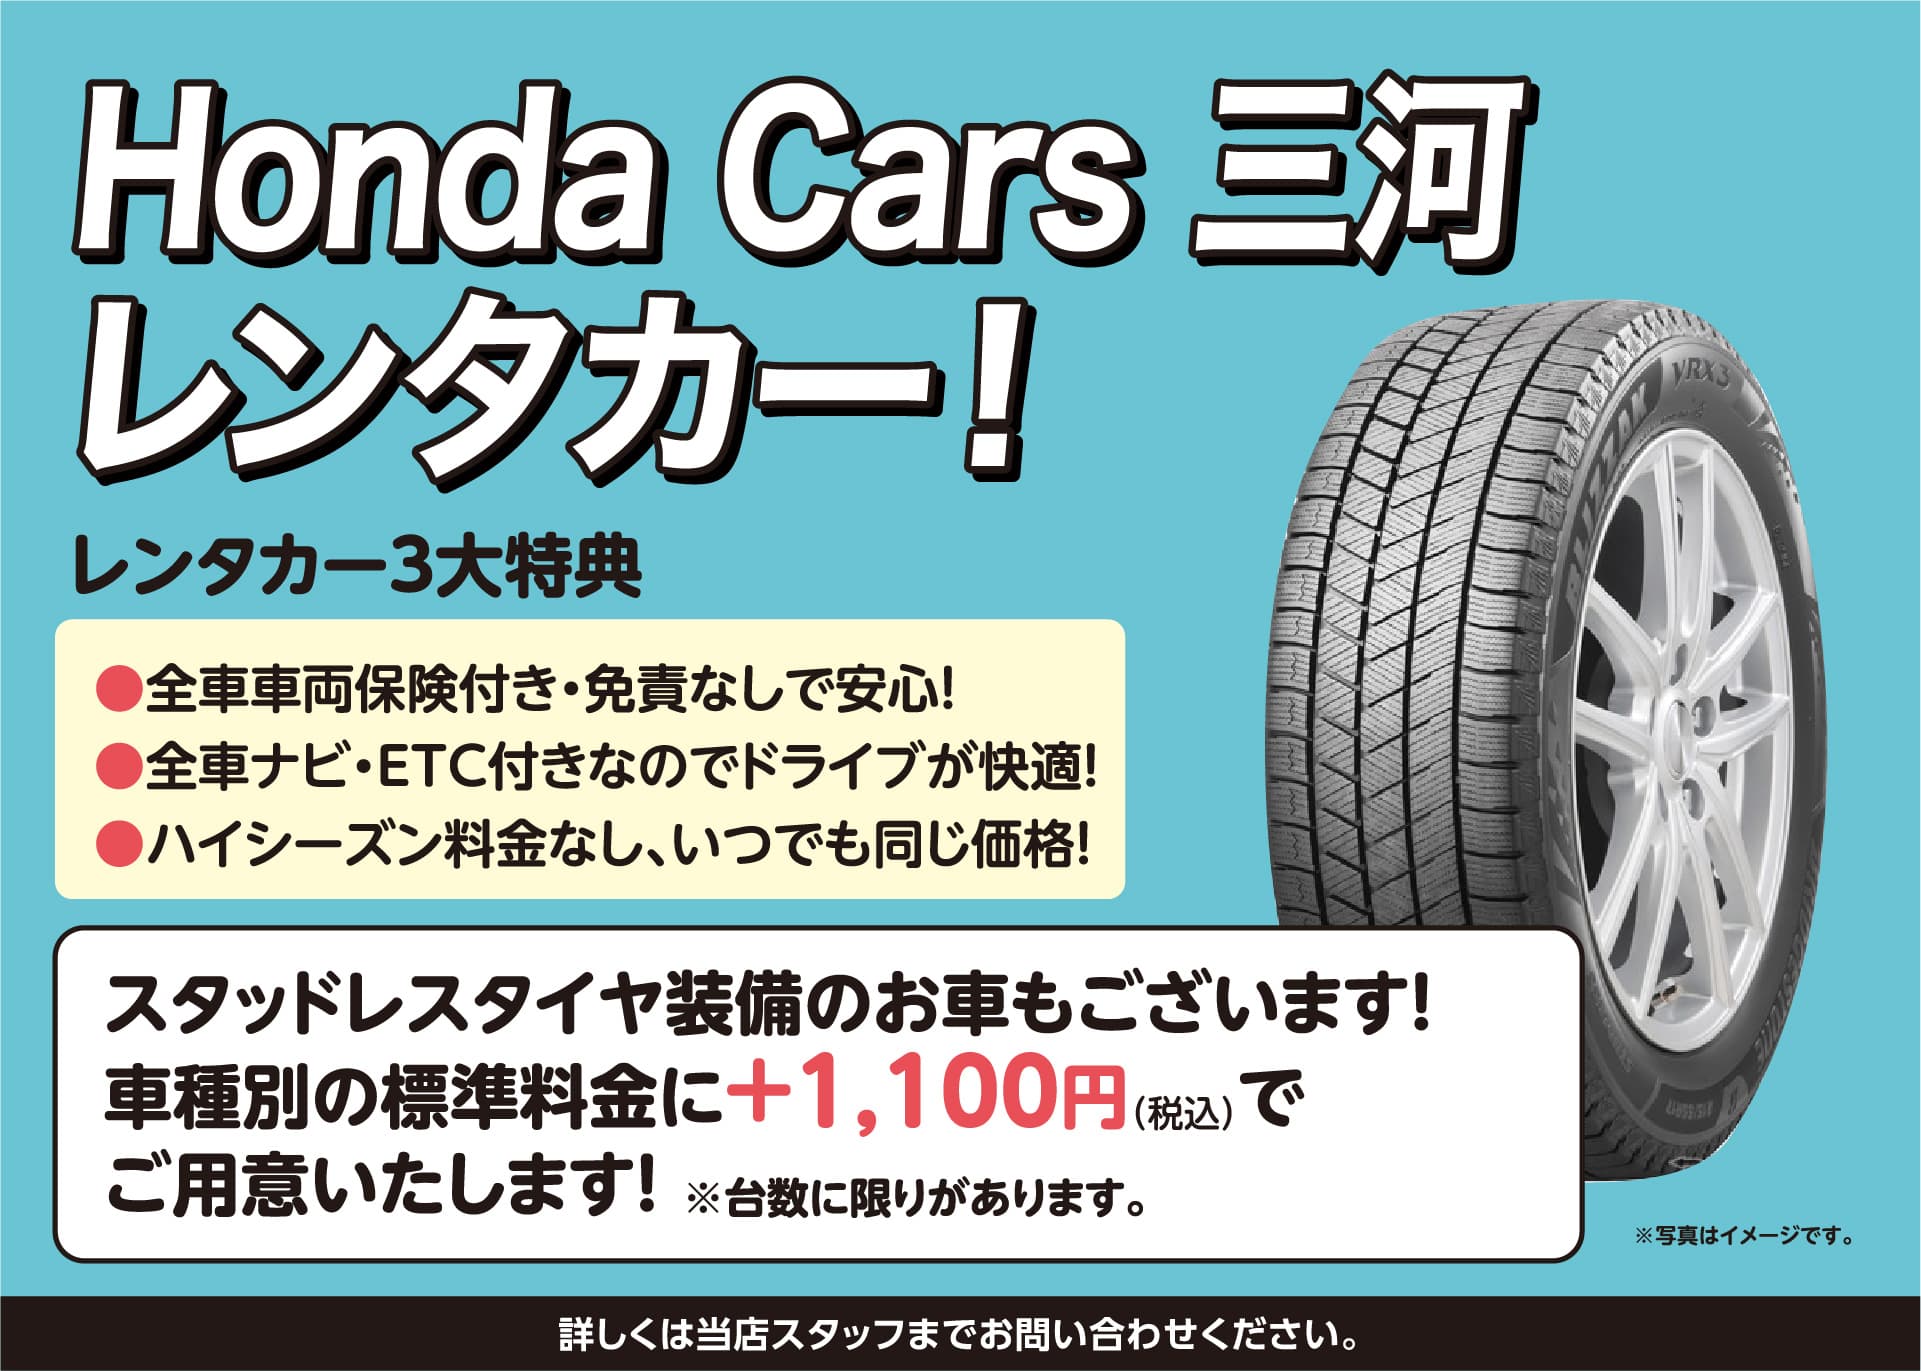 Honda Cars 三河レンタカー！